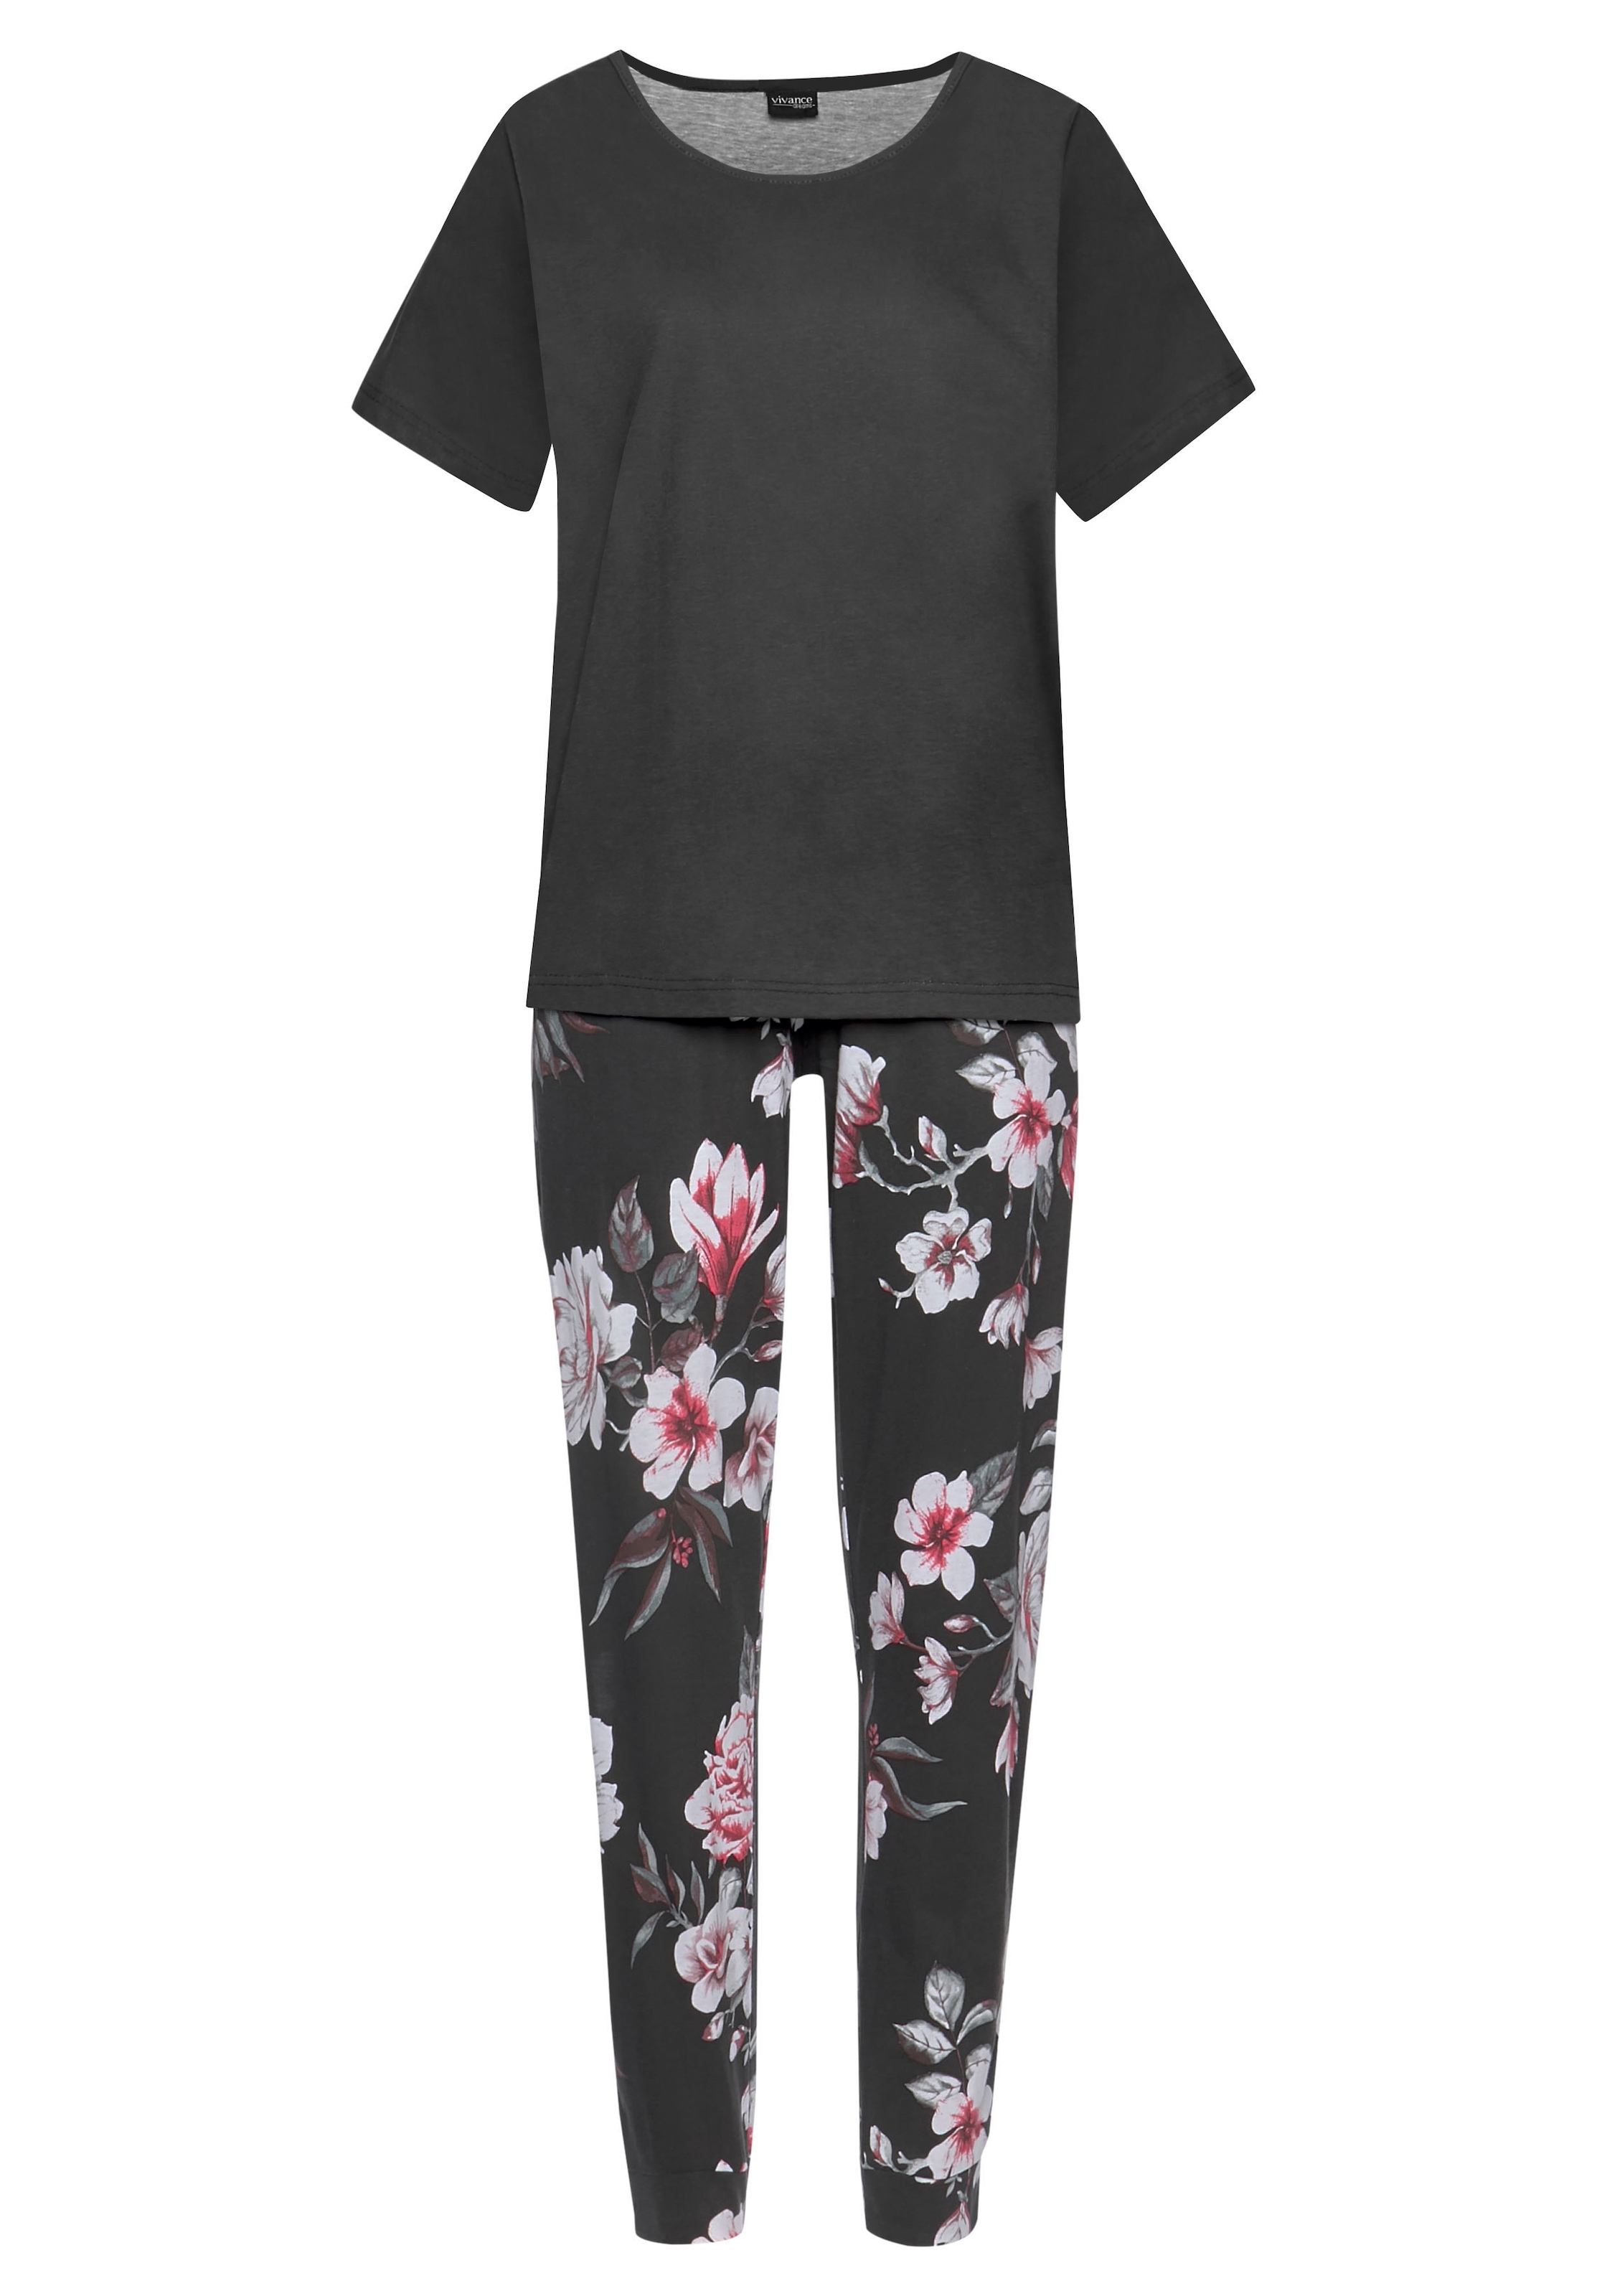 Vivance Dreams Pyjama, (4 tlg., 2 Stück), mit Blumendruck » LASCANA |  Bademode, Unterwäsche & Lingerie online kaufen